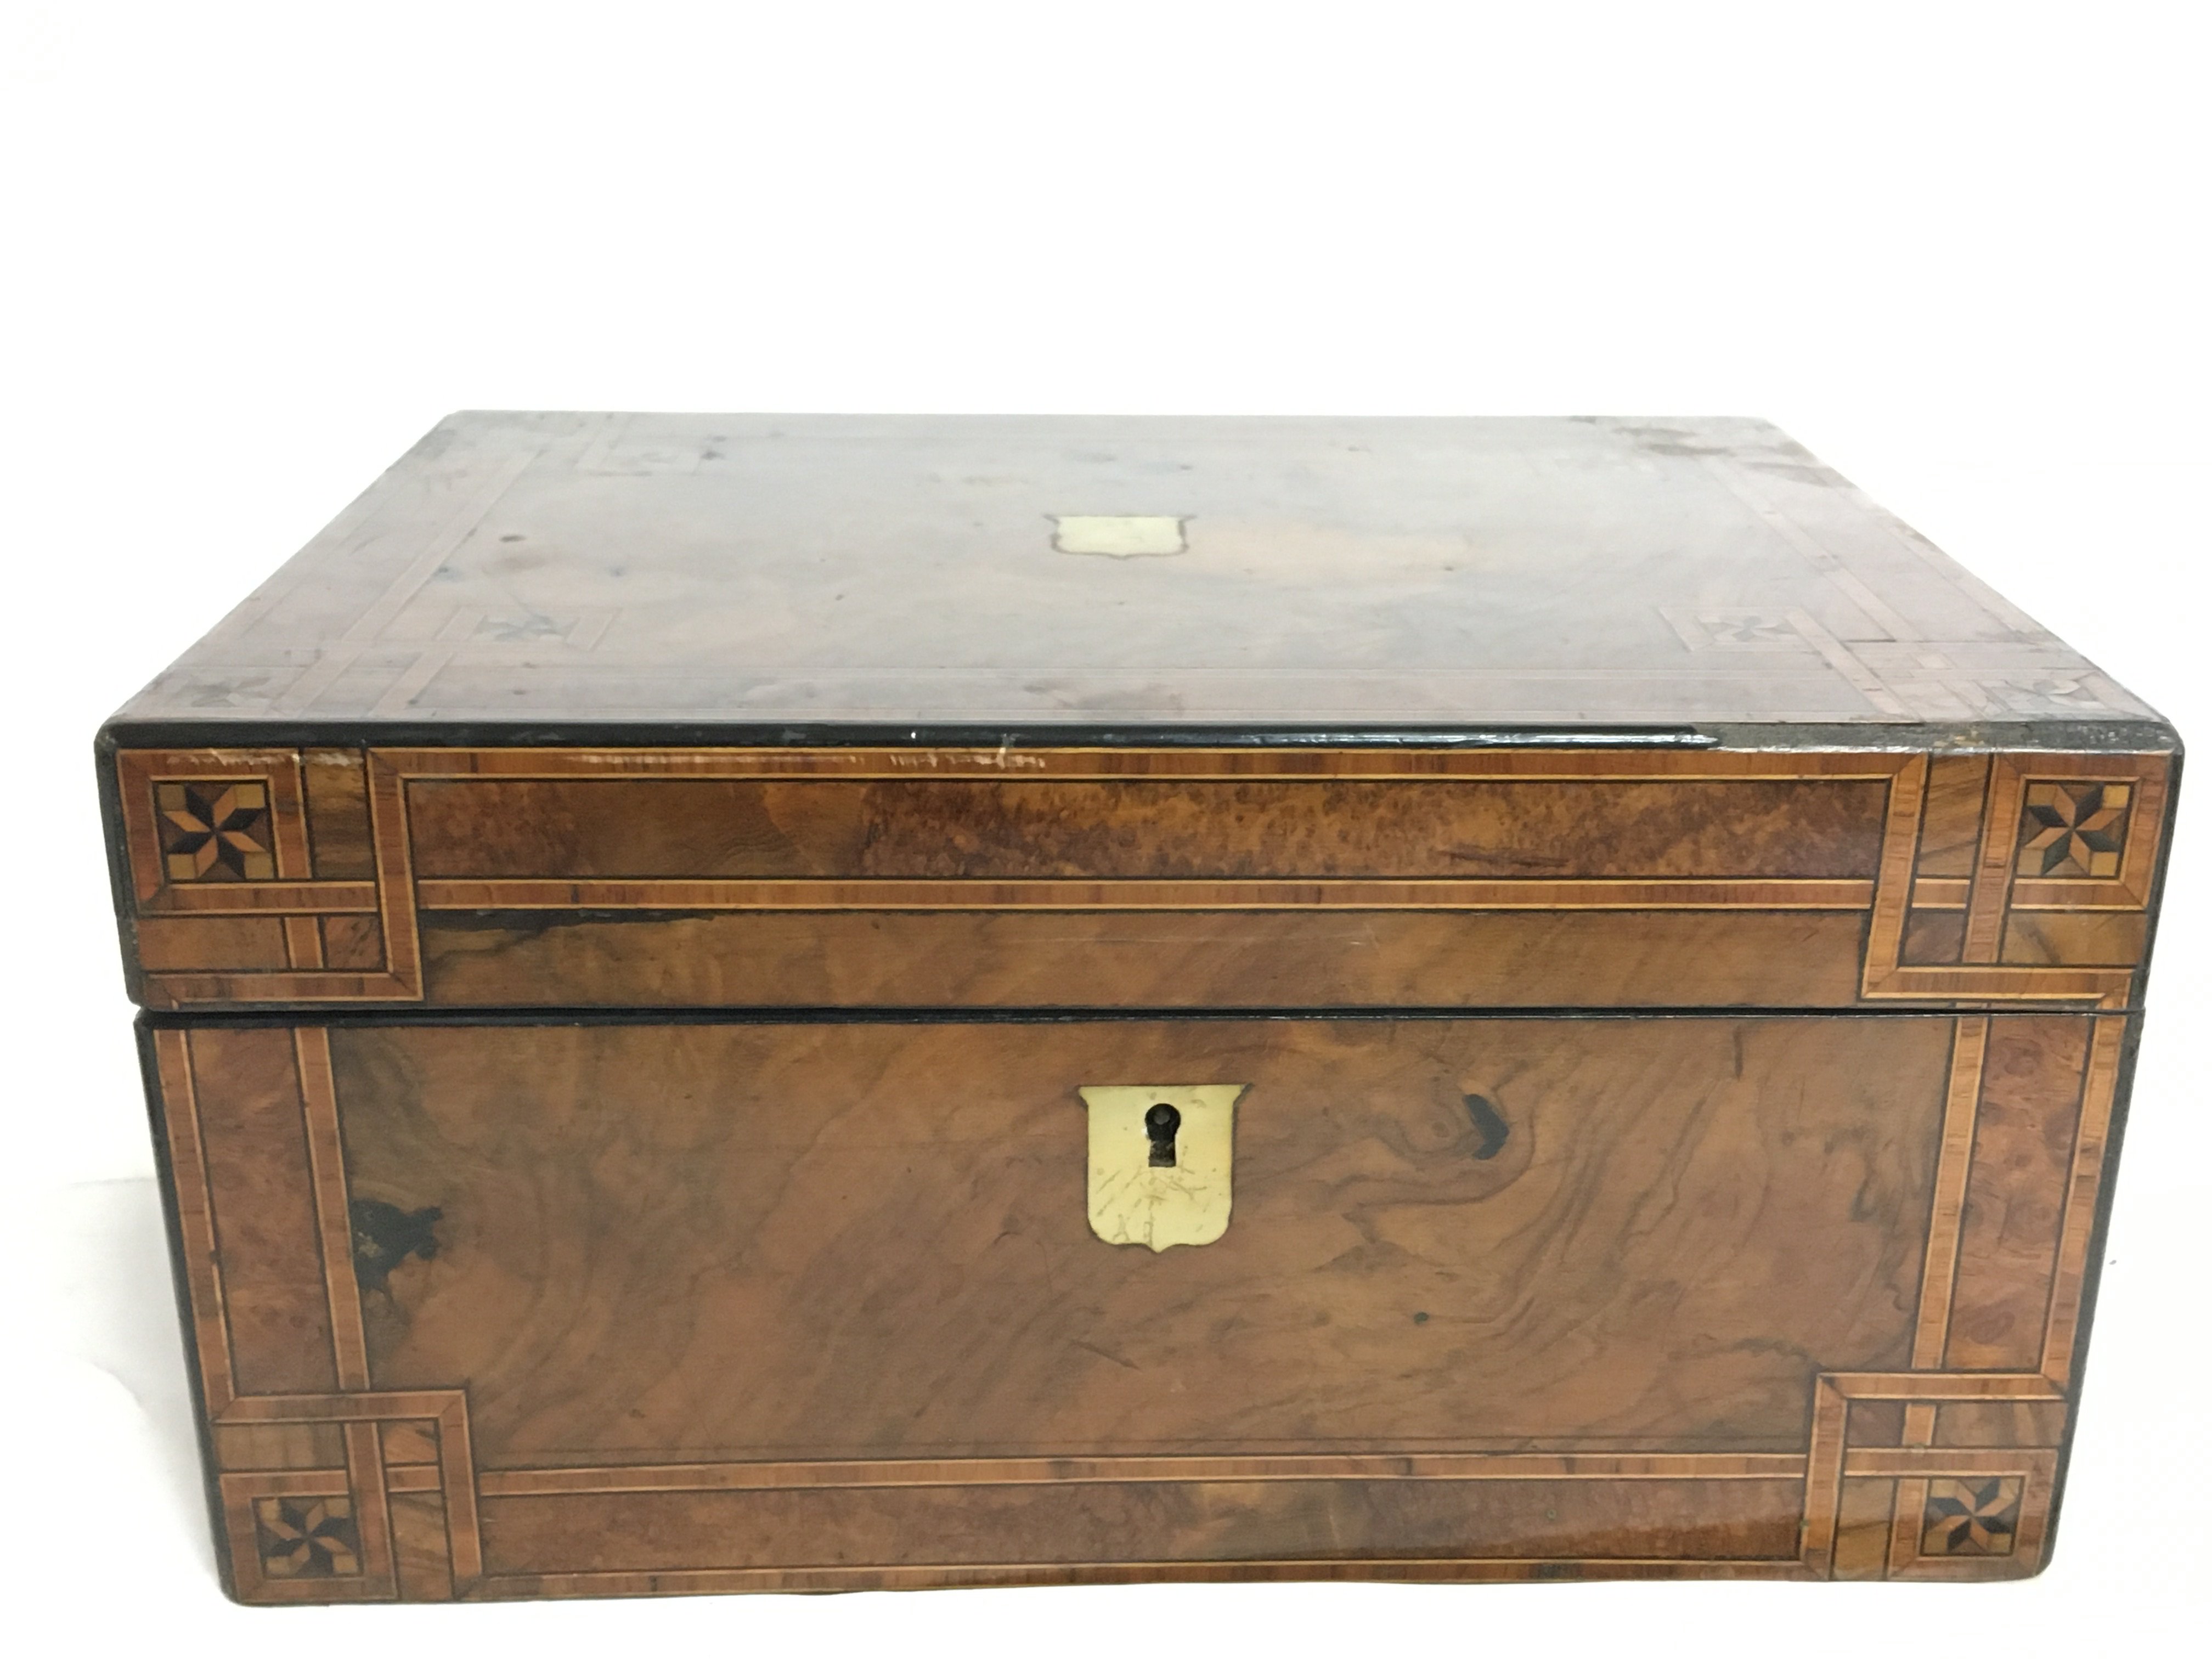 A Walnut inlaid writing box, dimensions 22.5x30x15